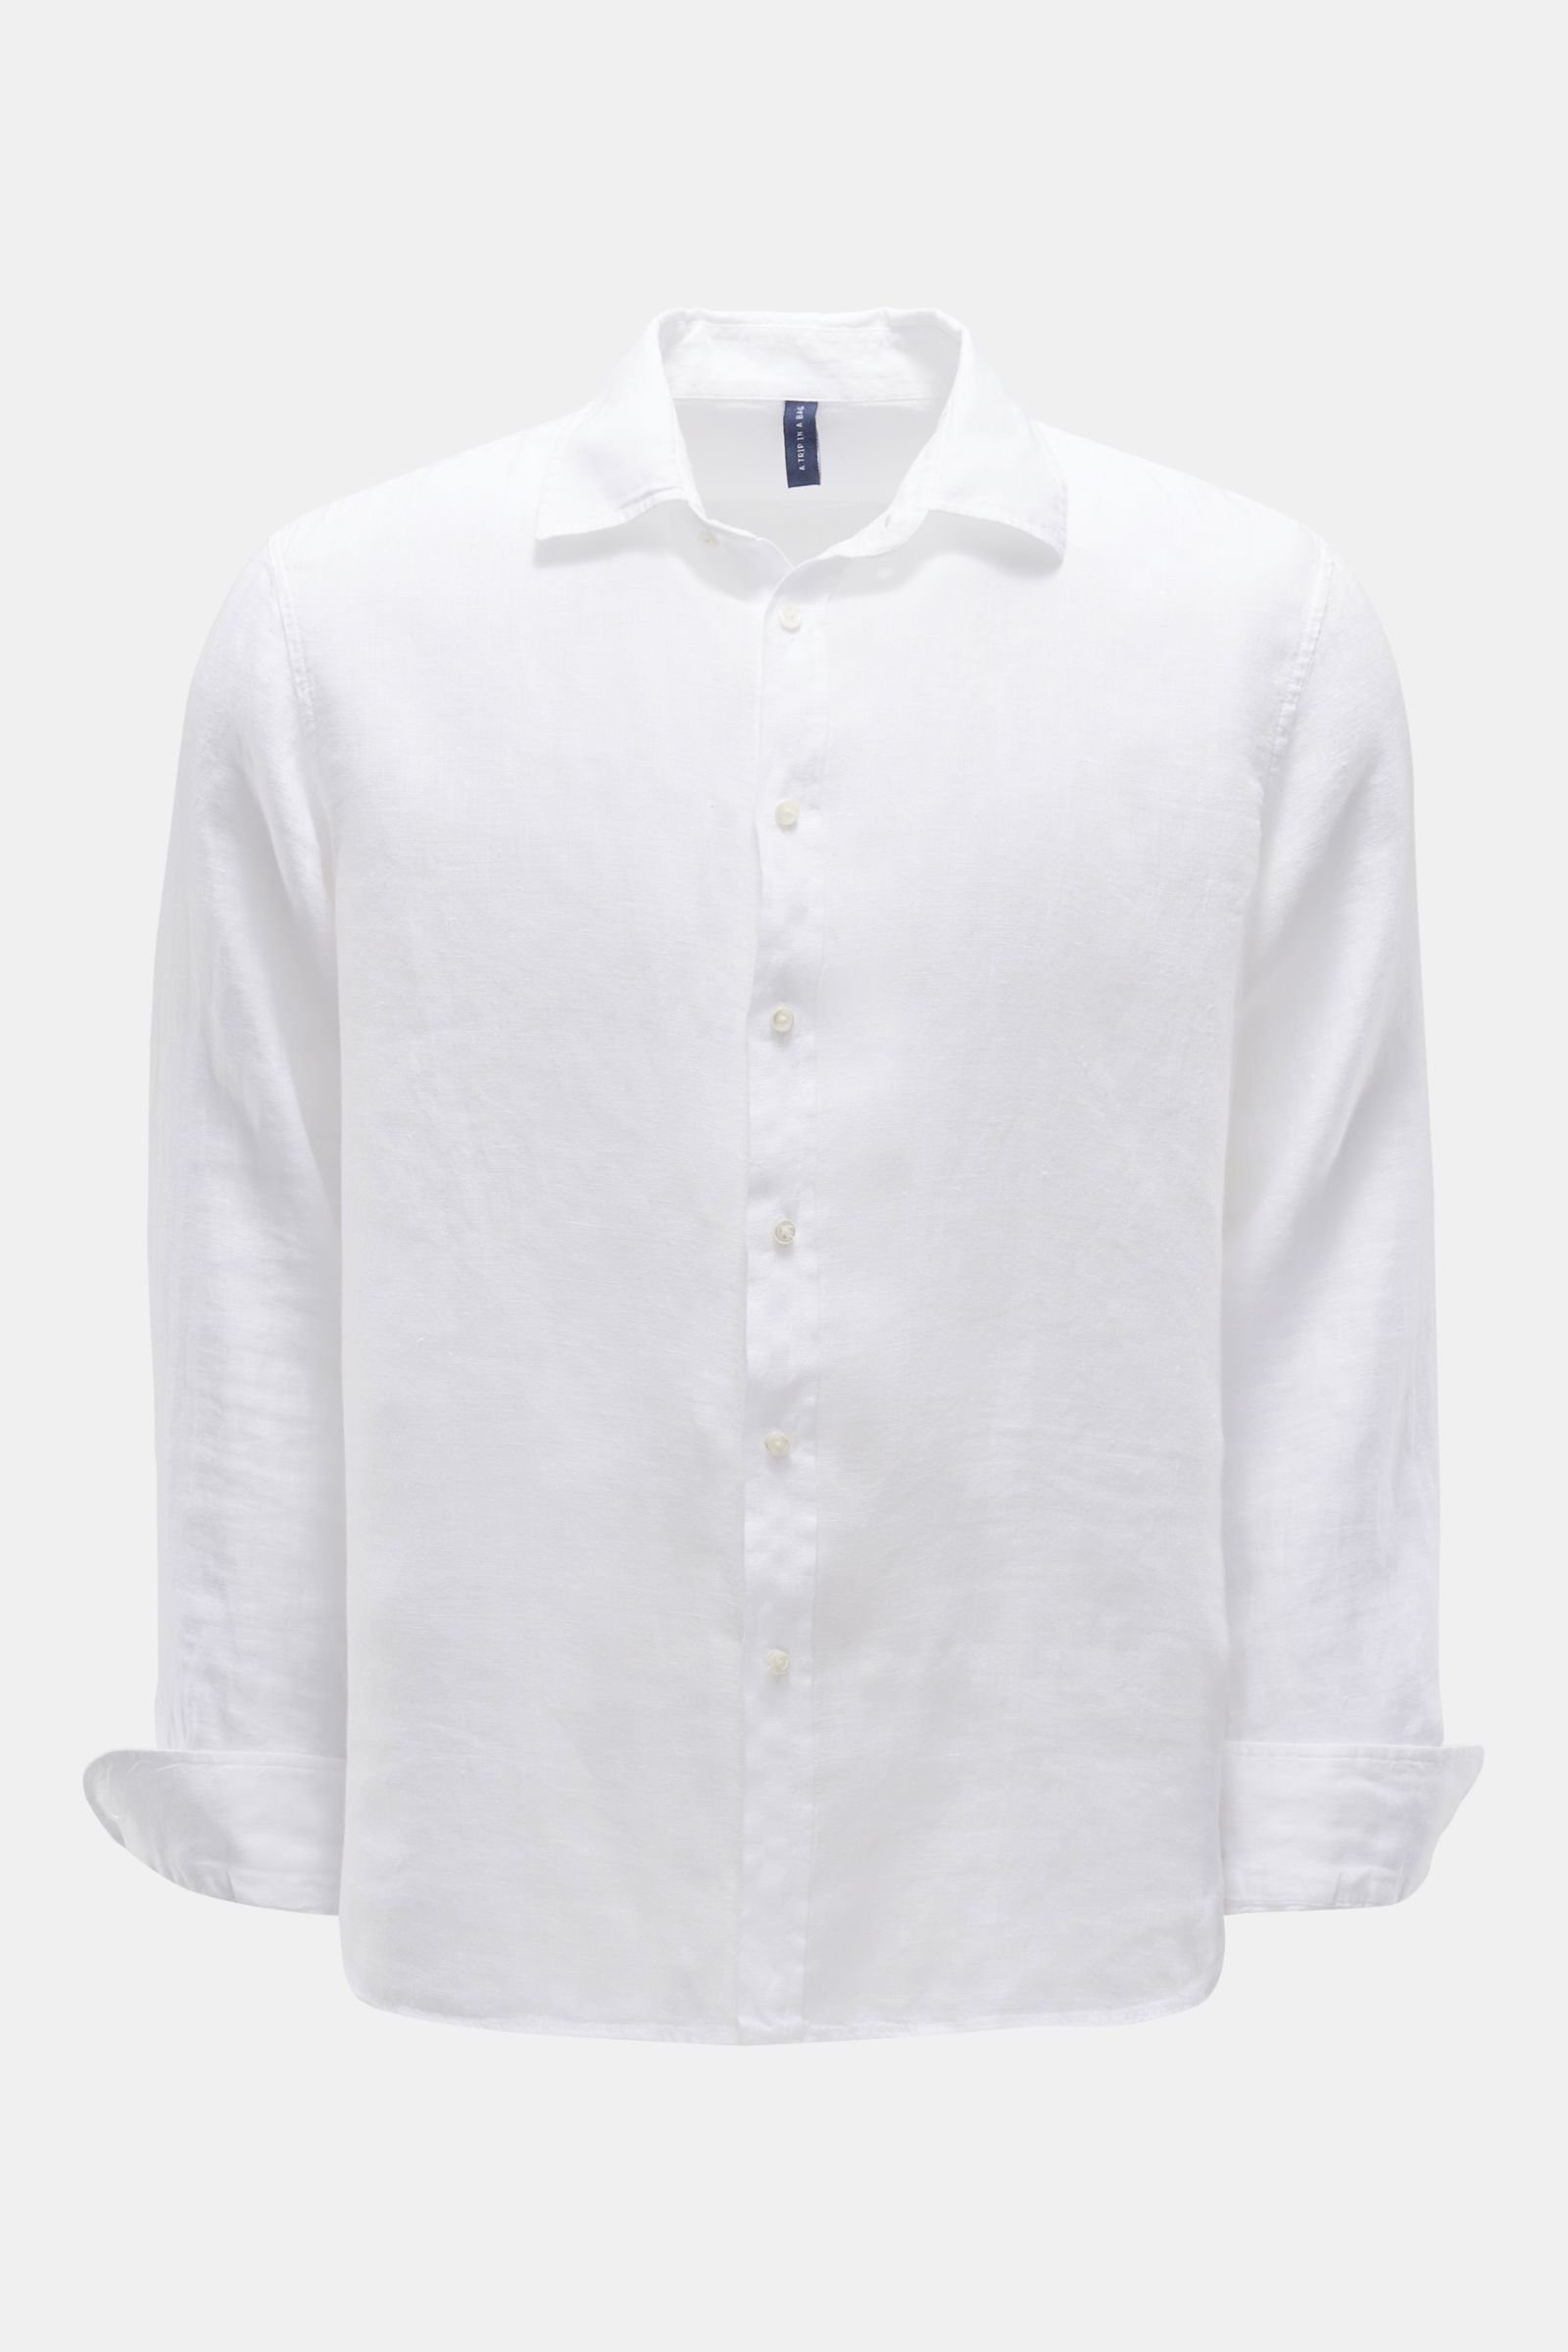 Linen shirt 'Linen Shirt' shark collar white